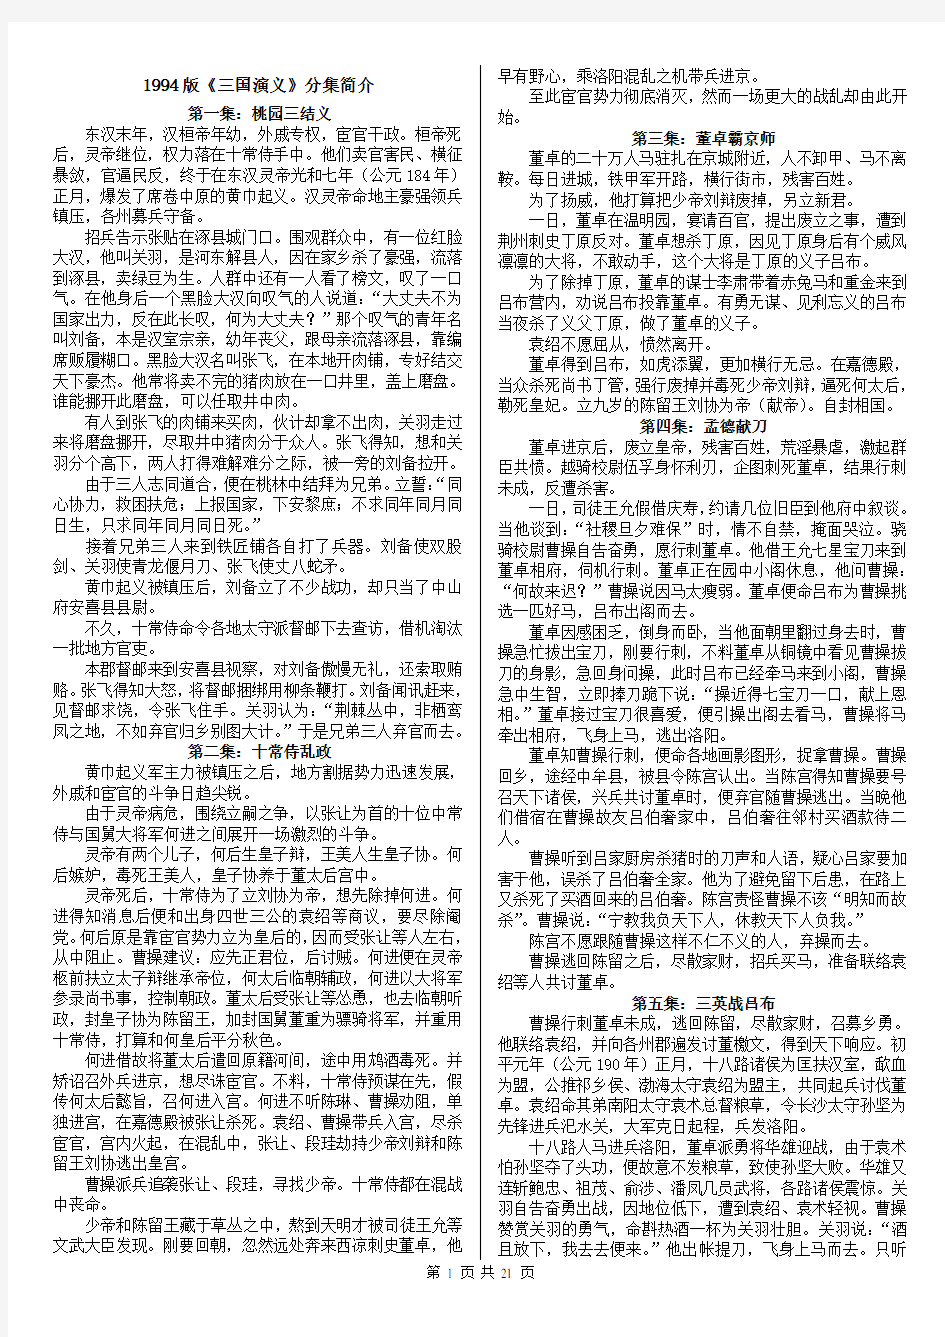 1994版三国演义分集简介